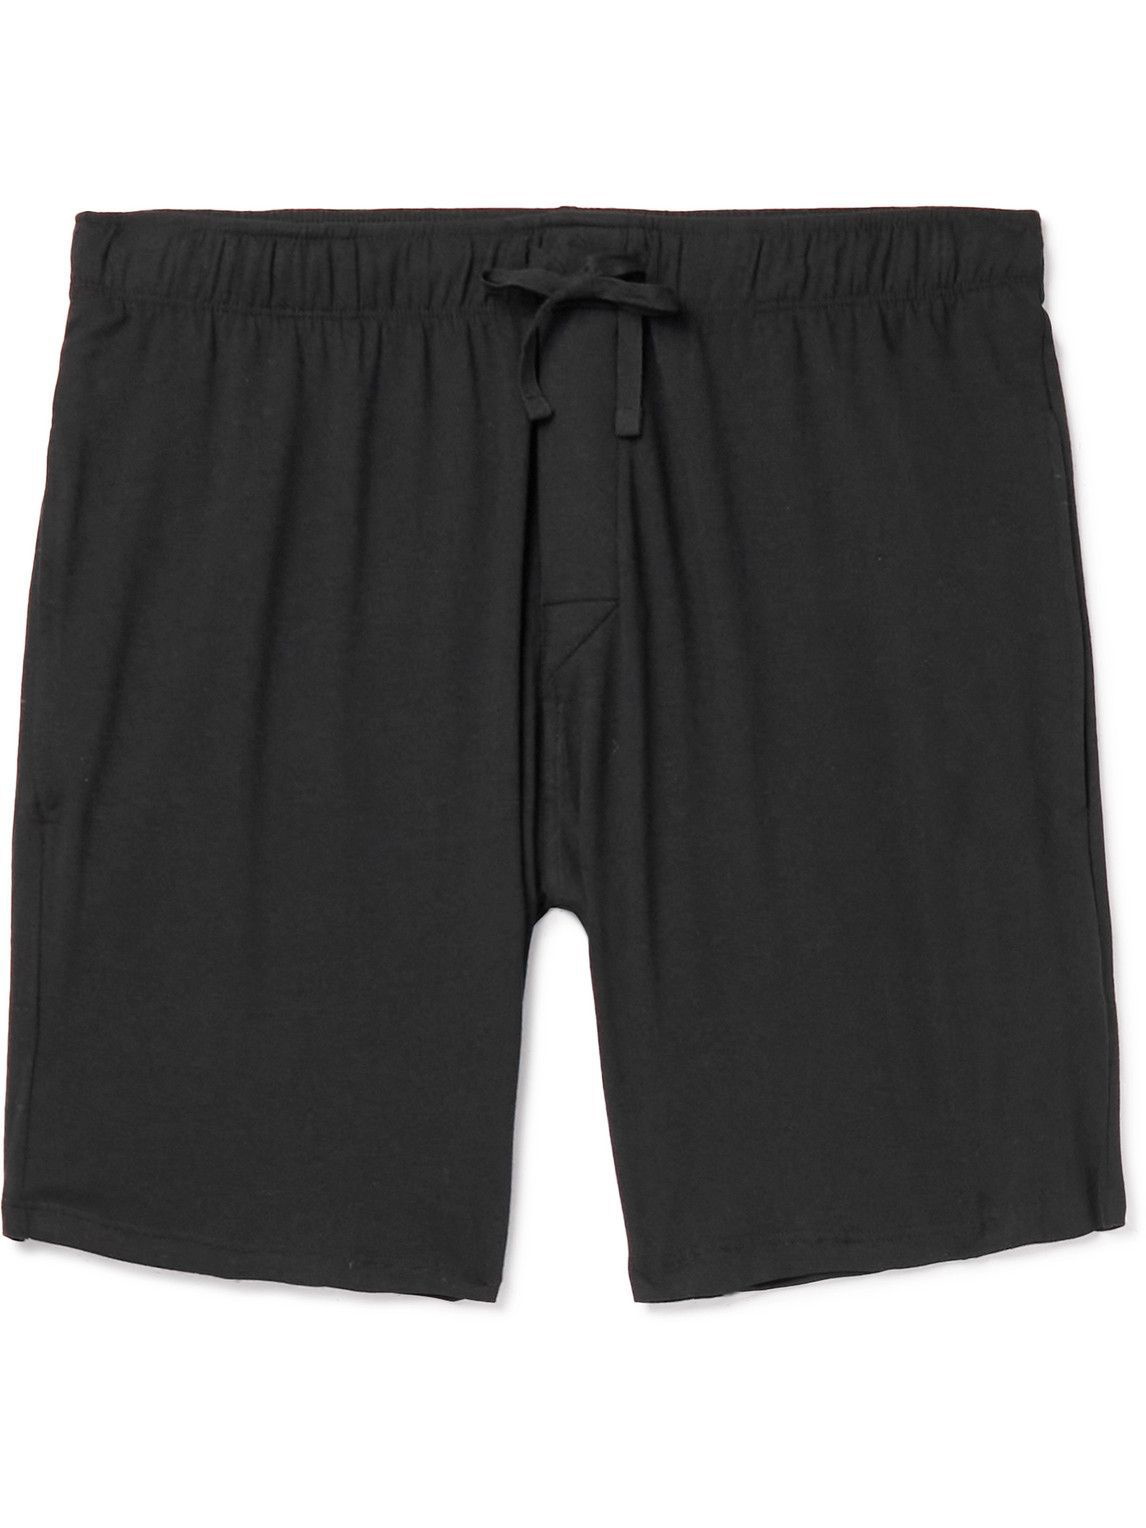 SCHIESSER - Cotton-Jersey Pyjama Shorts - Black - M Schiesser